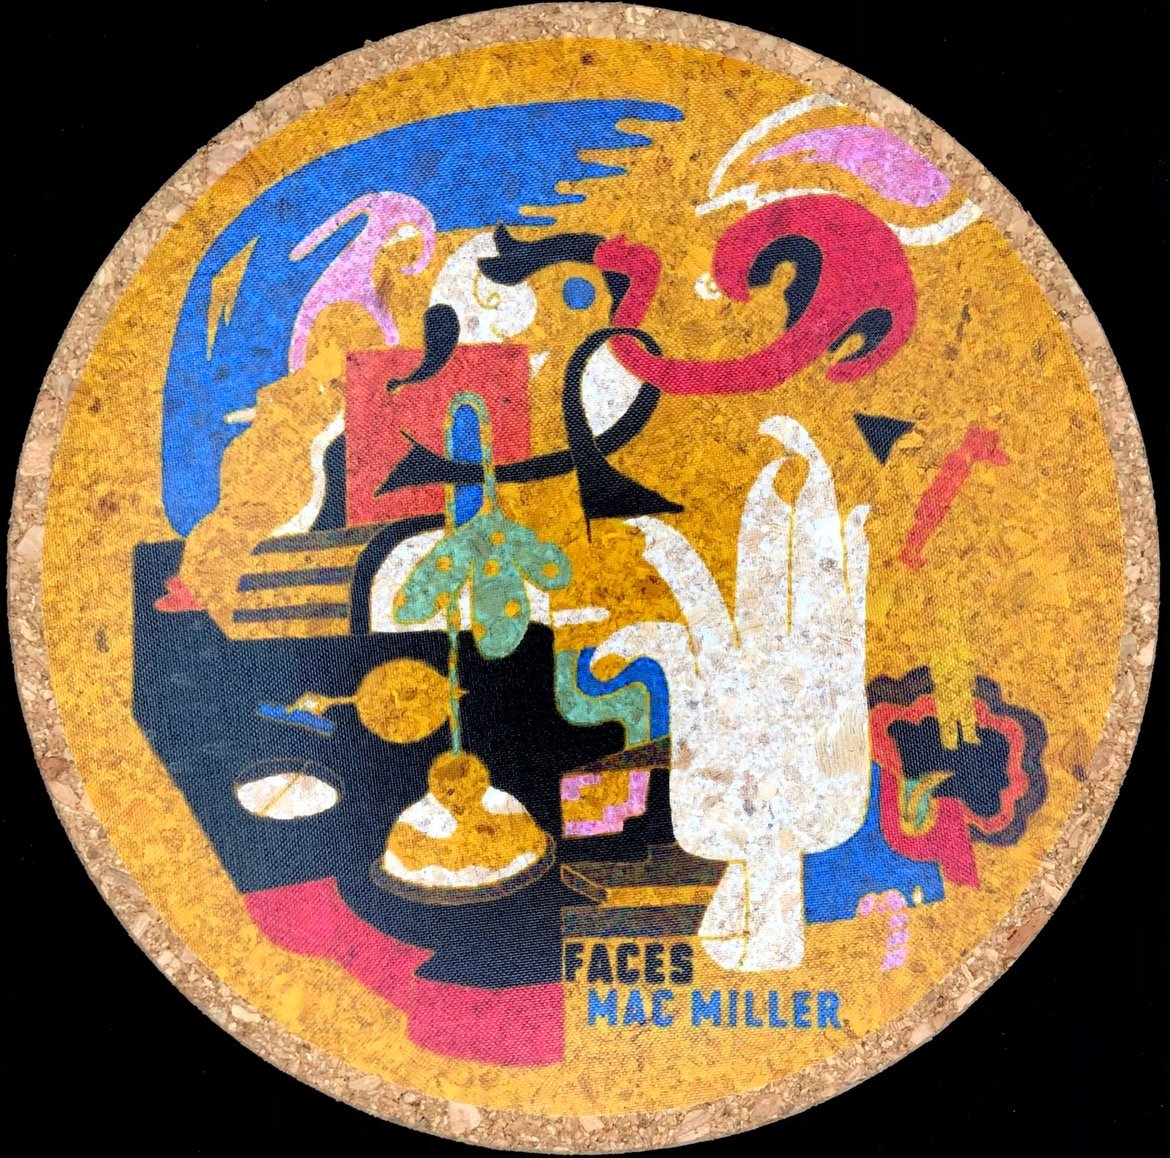 Faces Album (Mac Miller)